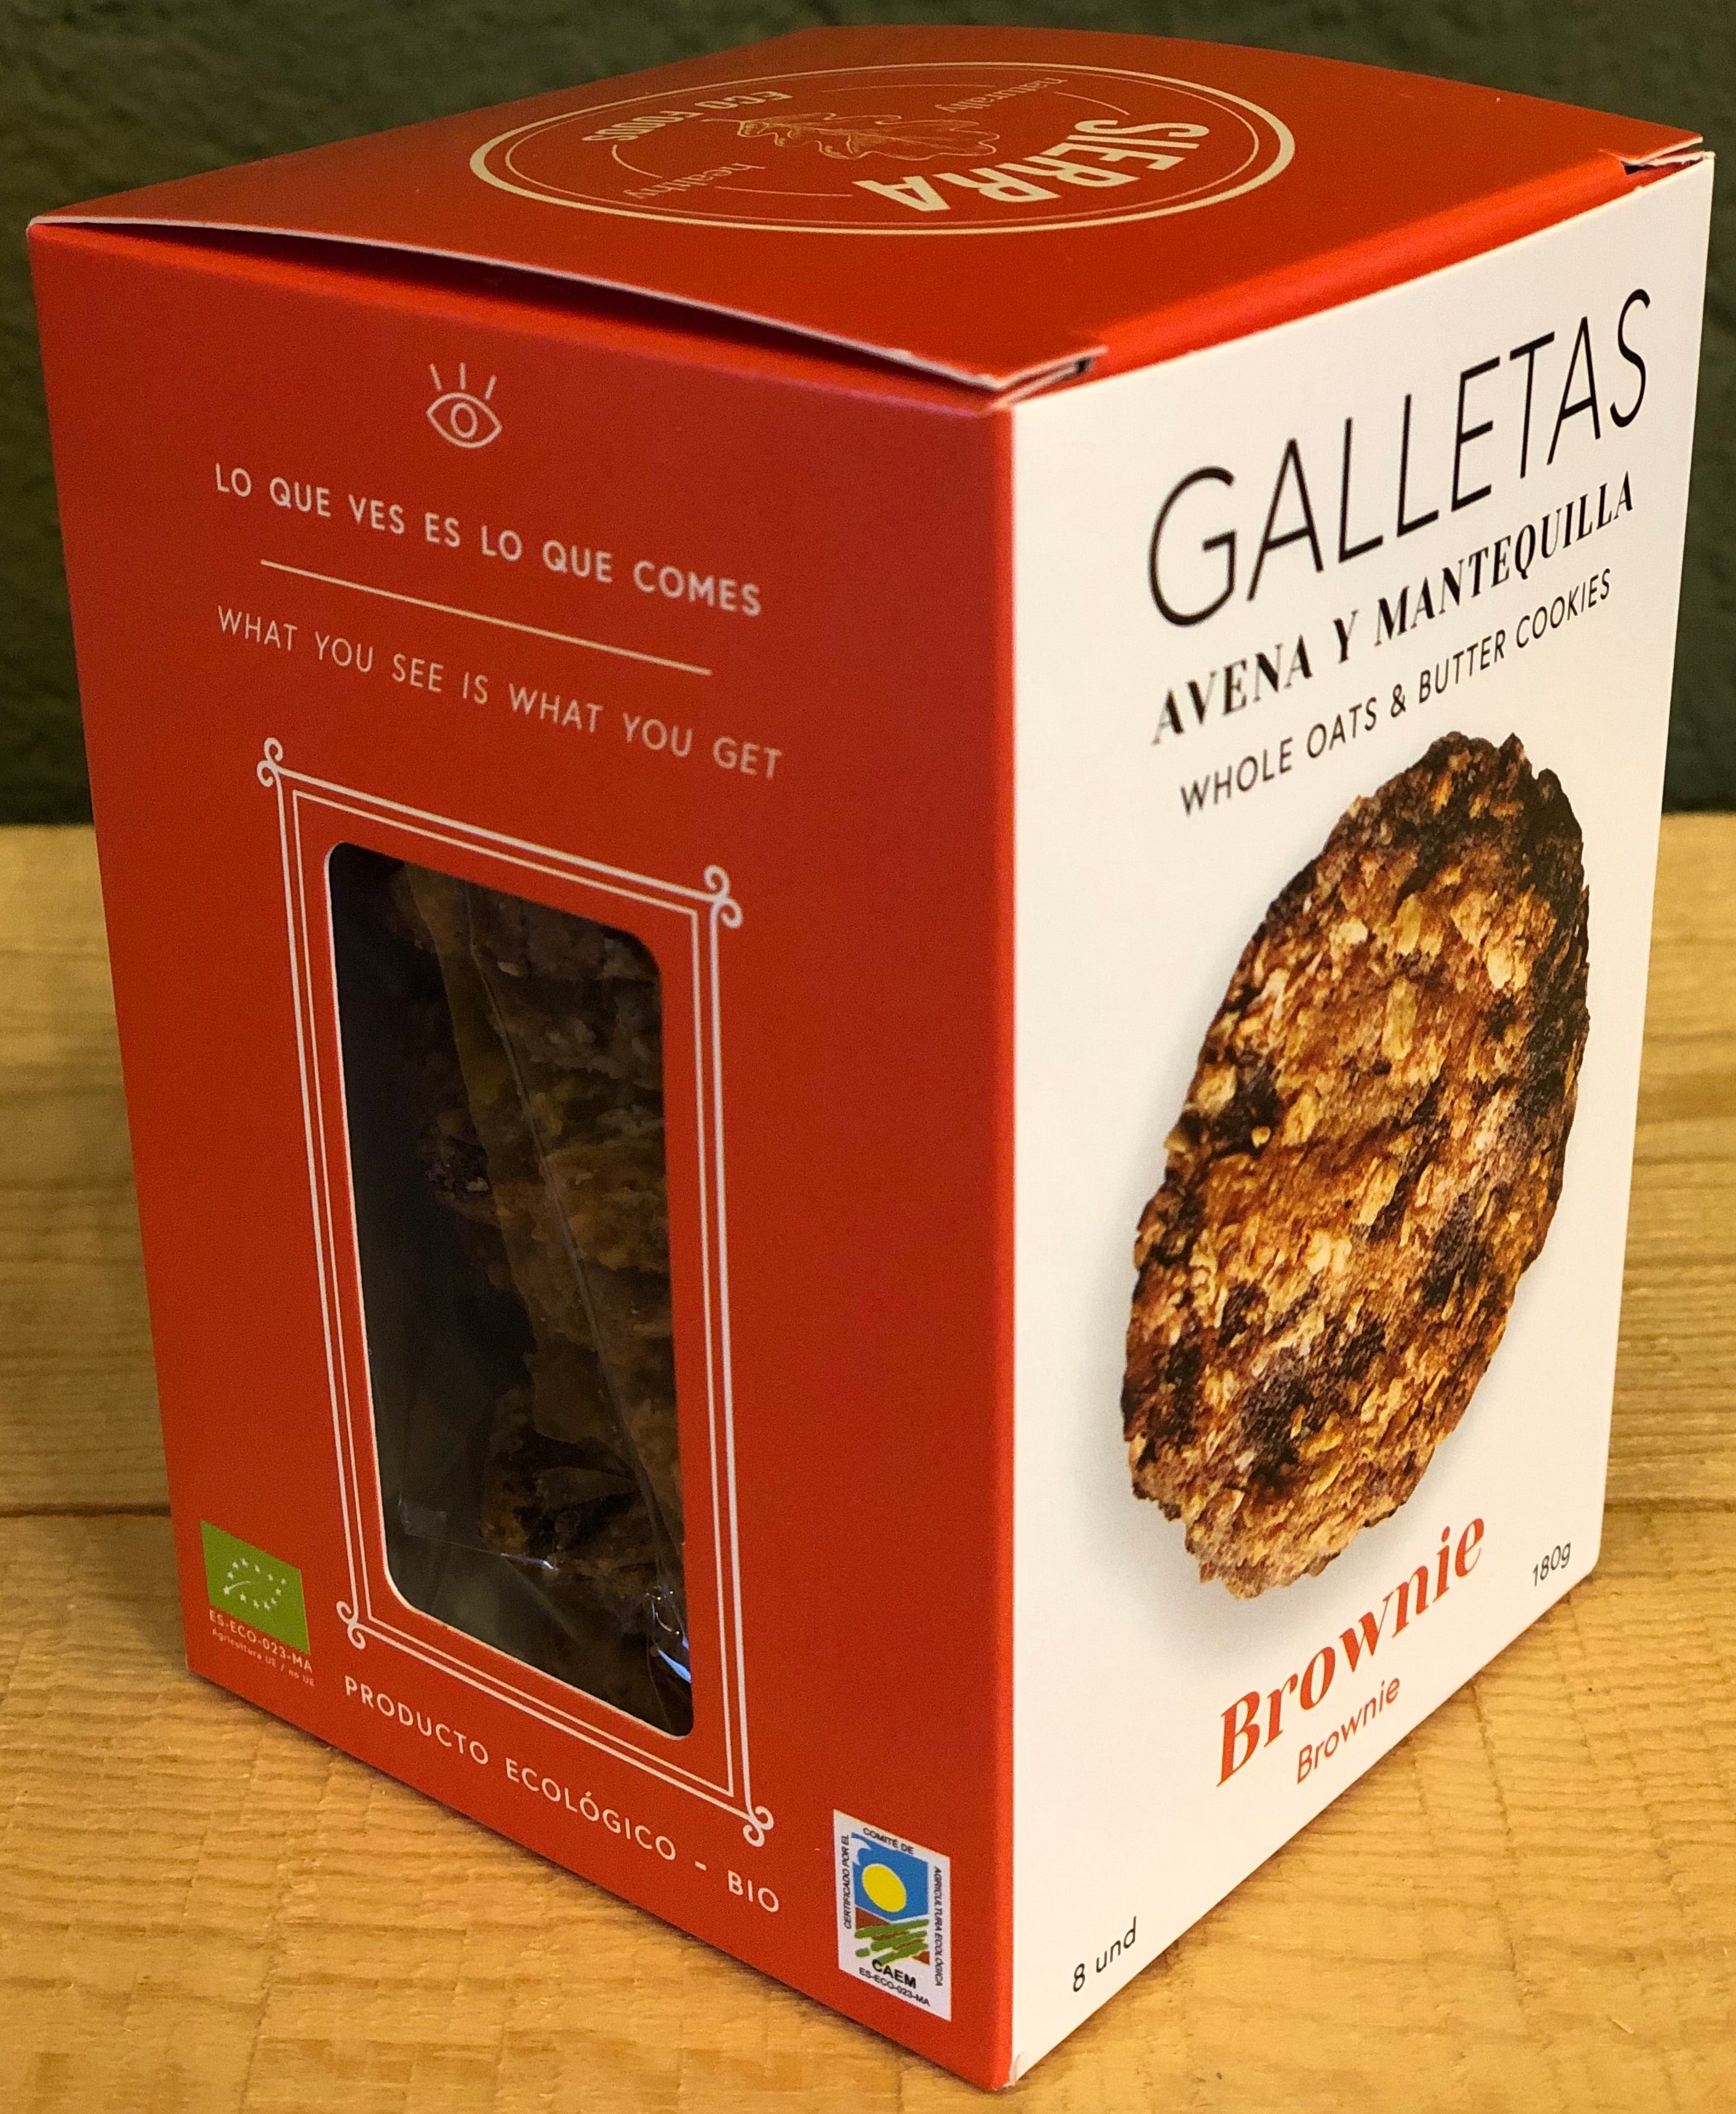 Galletas De Avena (Oatmeal Cookies)